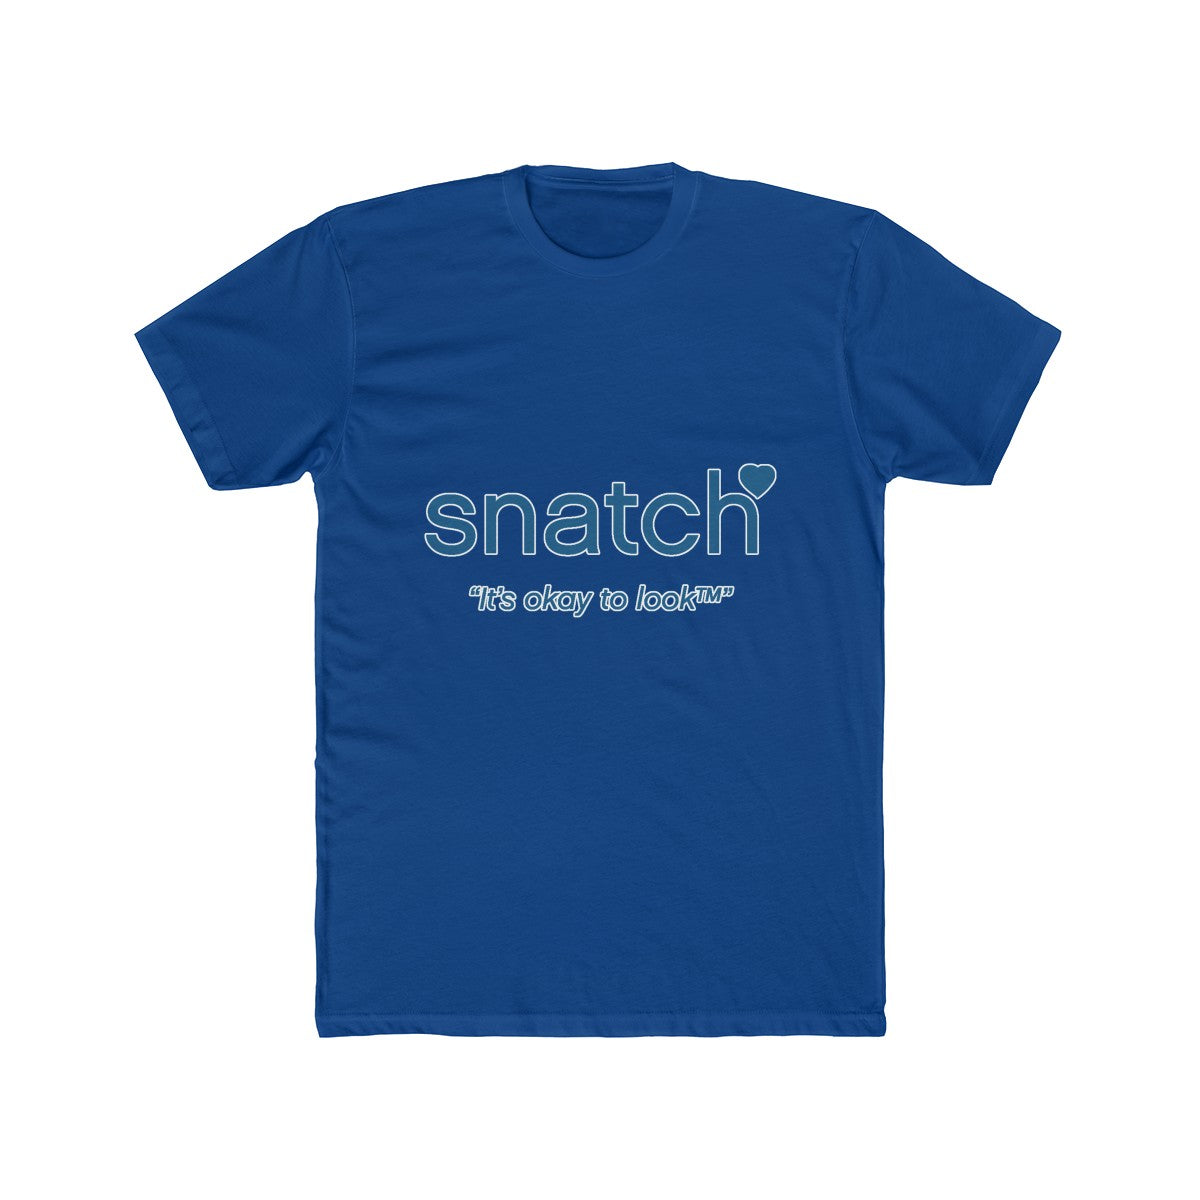 Match.com Snatch parody Funny Tee